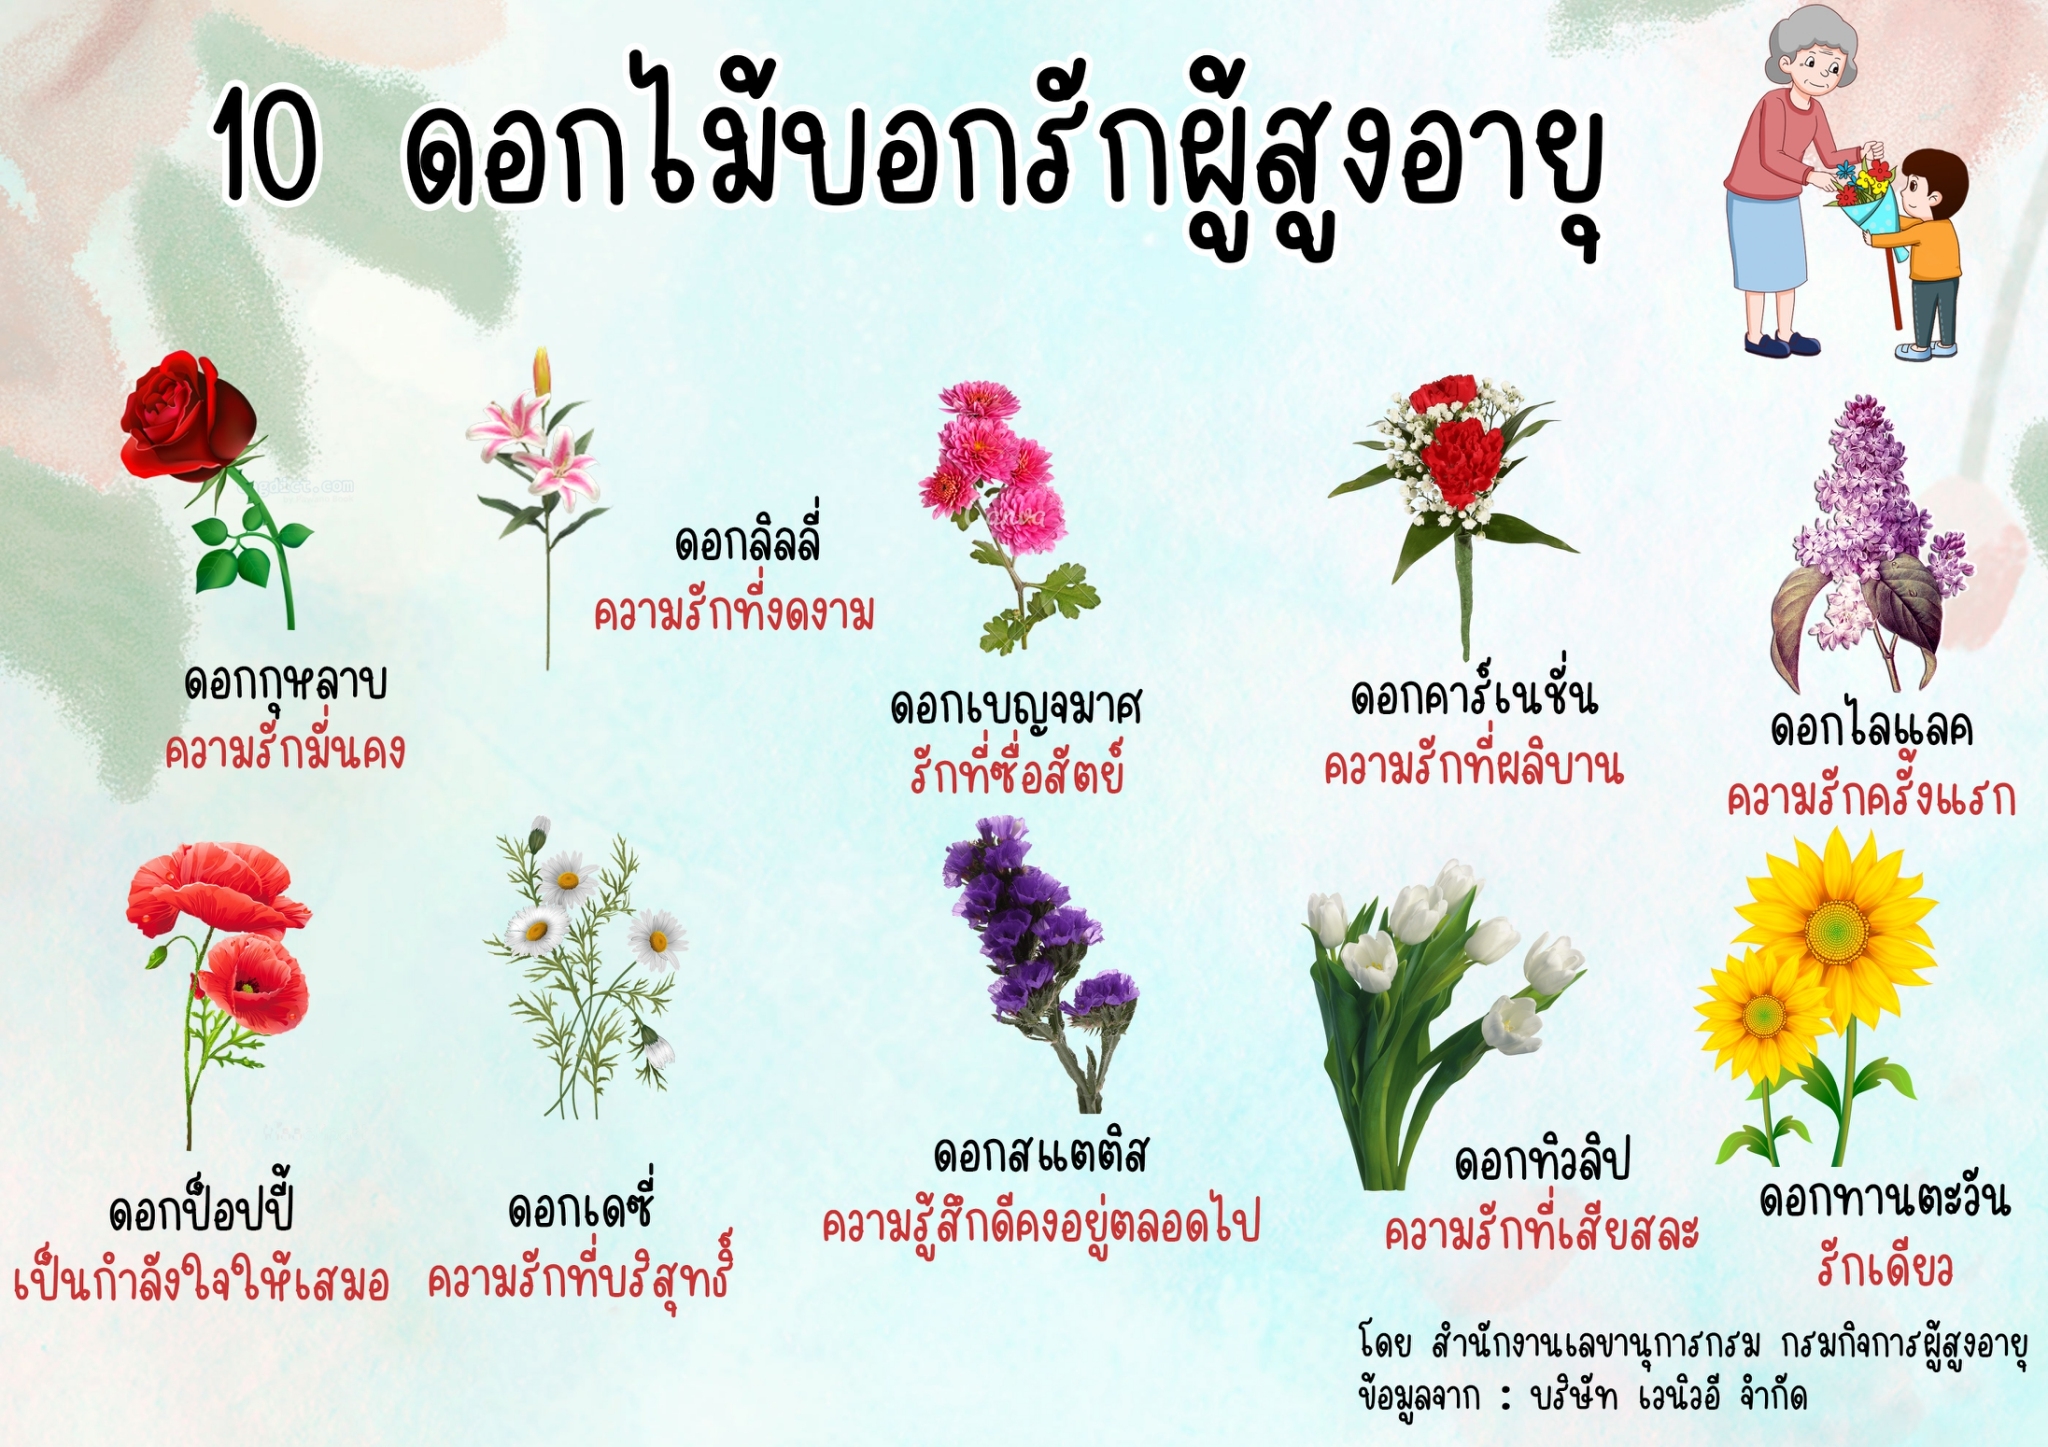 10 ดอกไม้บอกรักผู้สูงอายุ